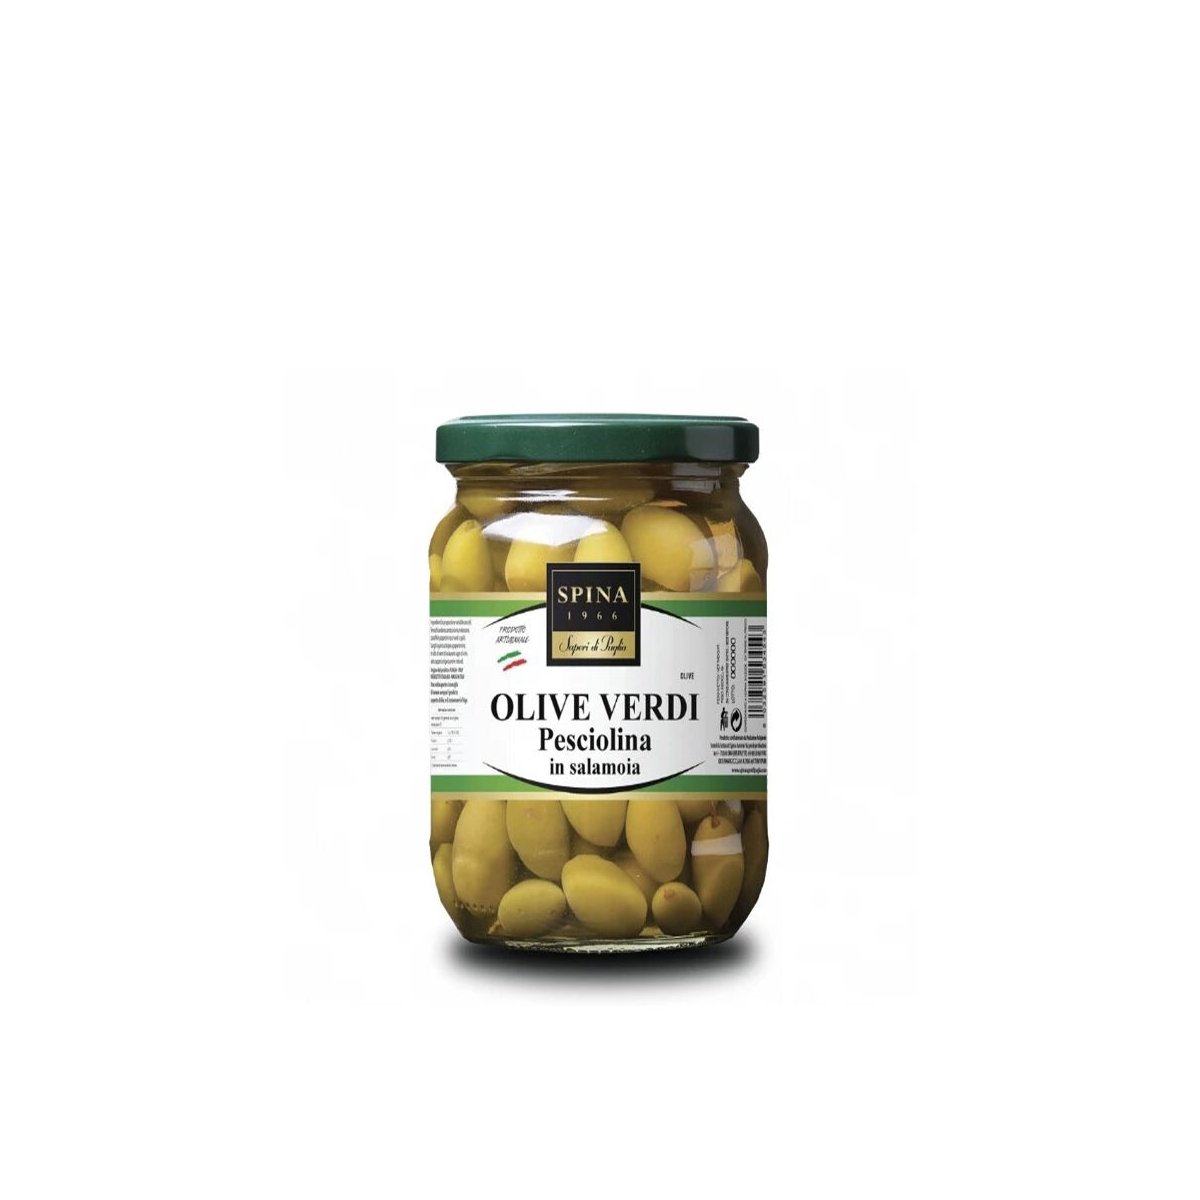 Olive verdi pesciolina in salamoia aromatizzata